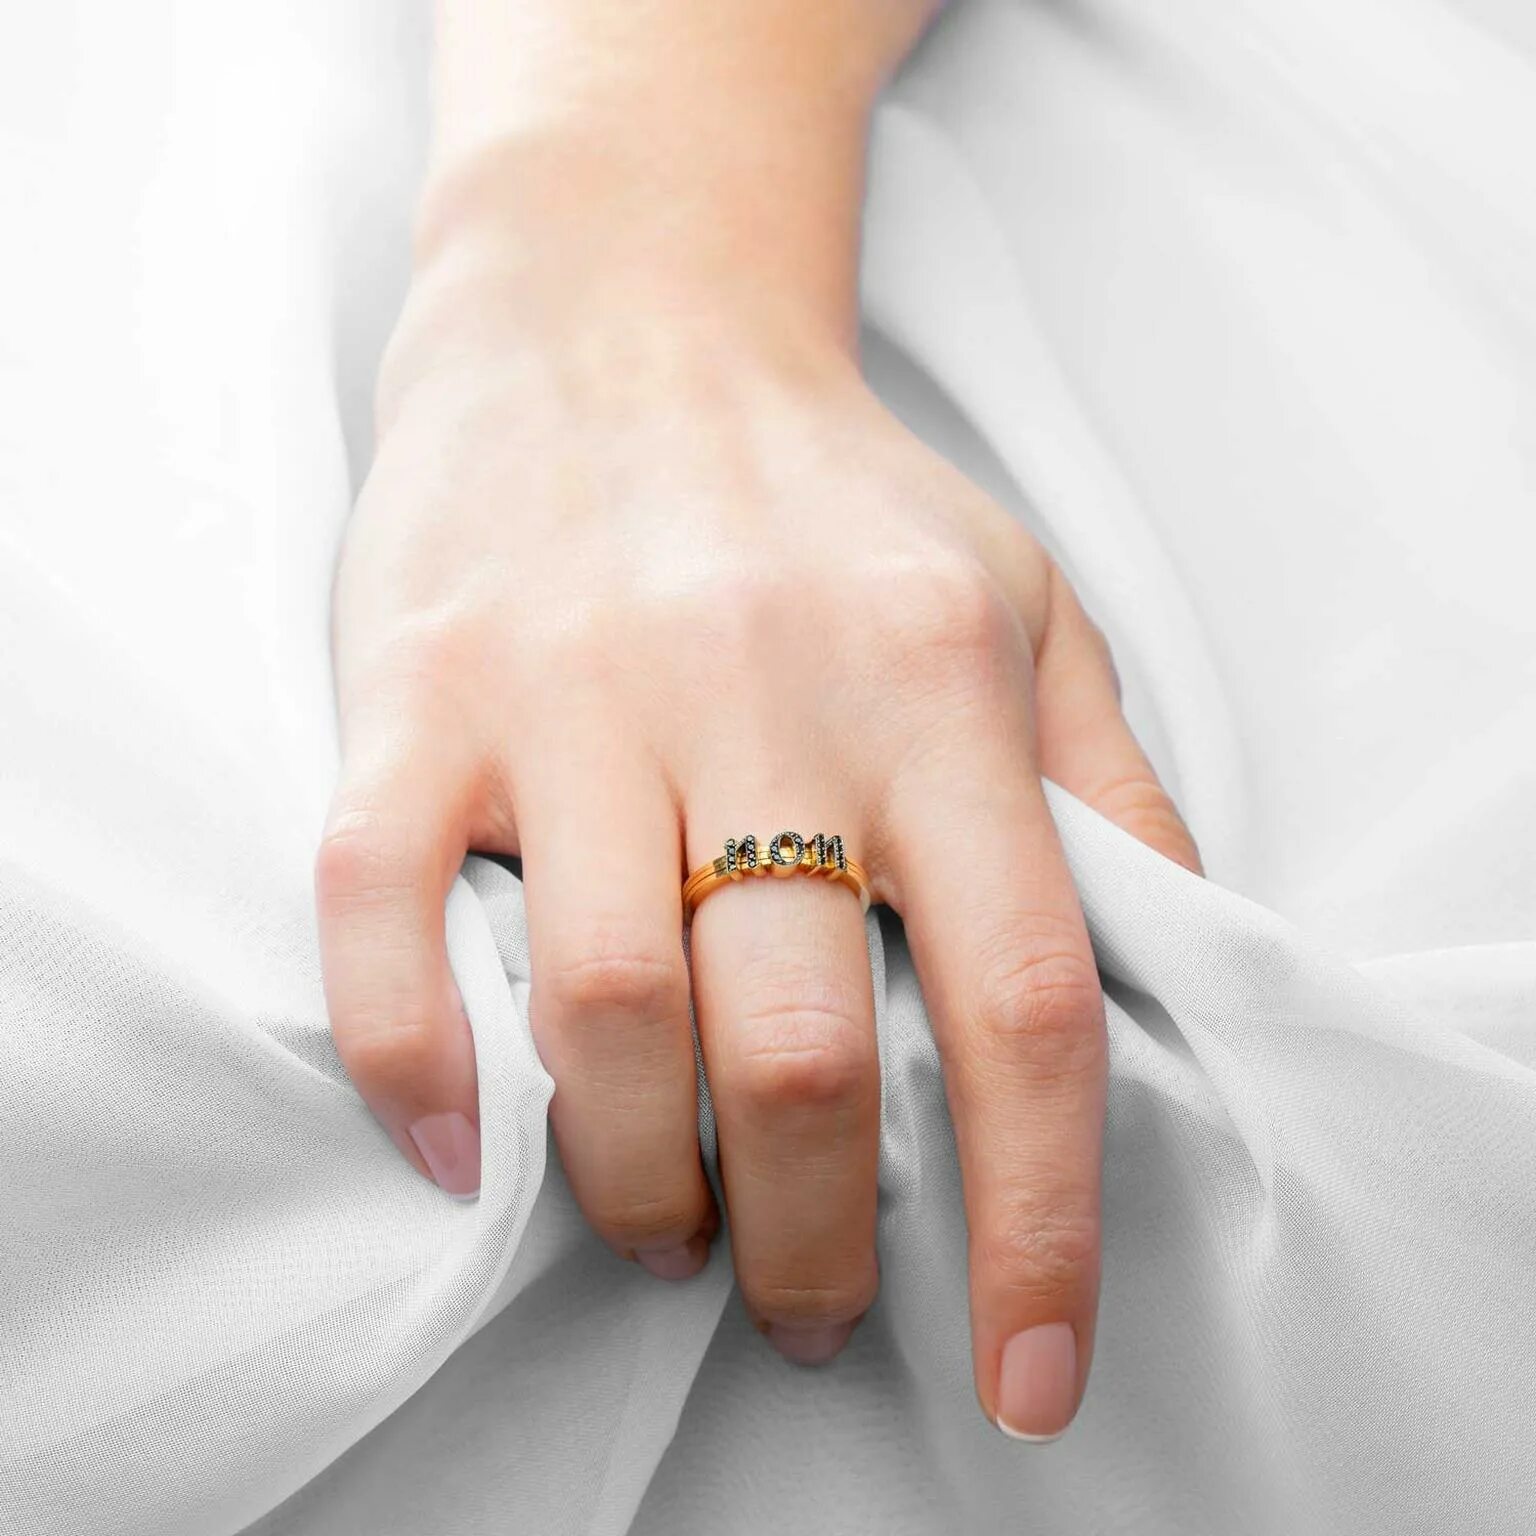 Кольцо замужества. Обручальное кольцо на пальце. Свадебные кольца на пальцах. Кольцо для замужества. Обручальные кольца на руках.